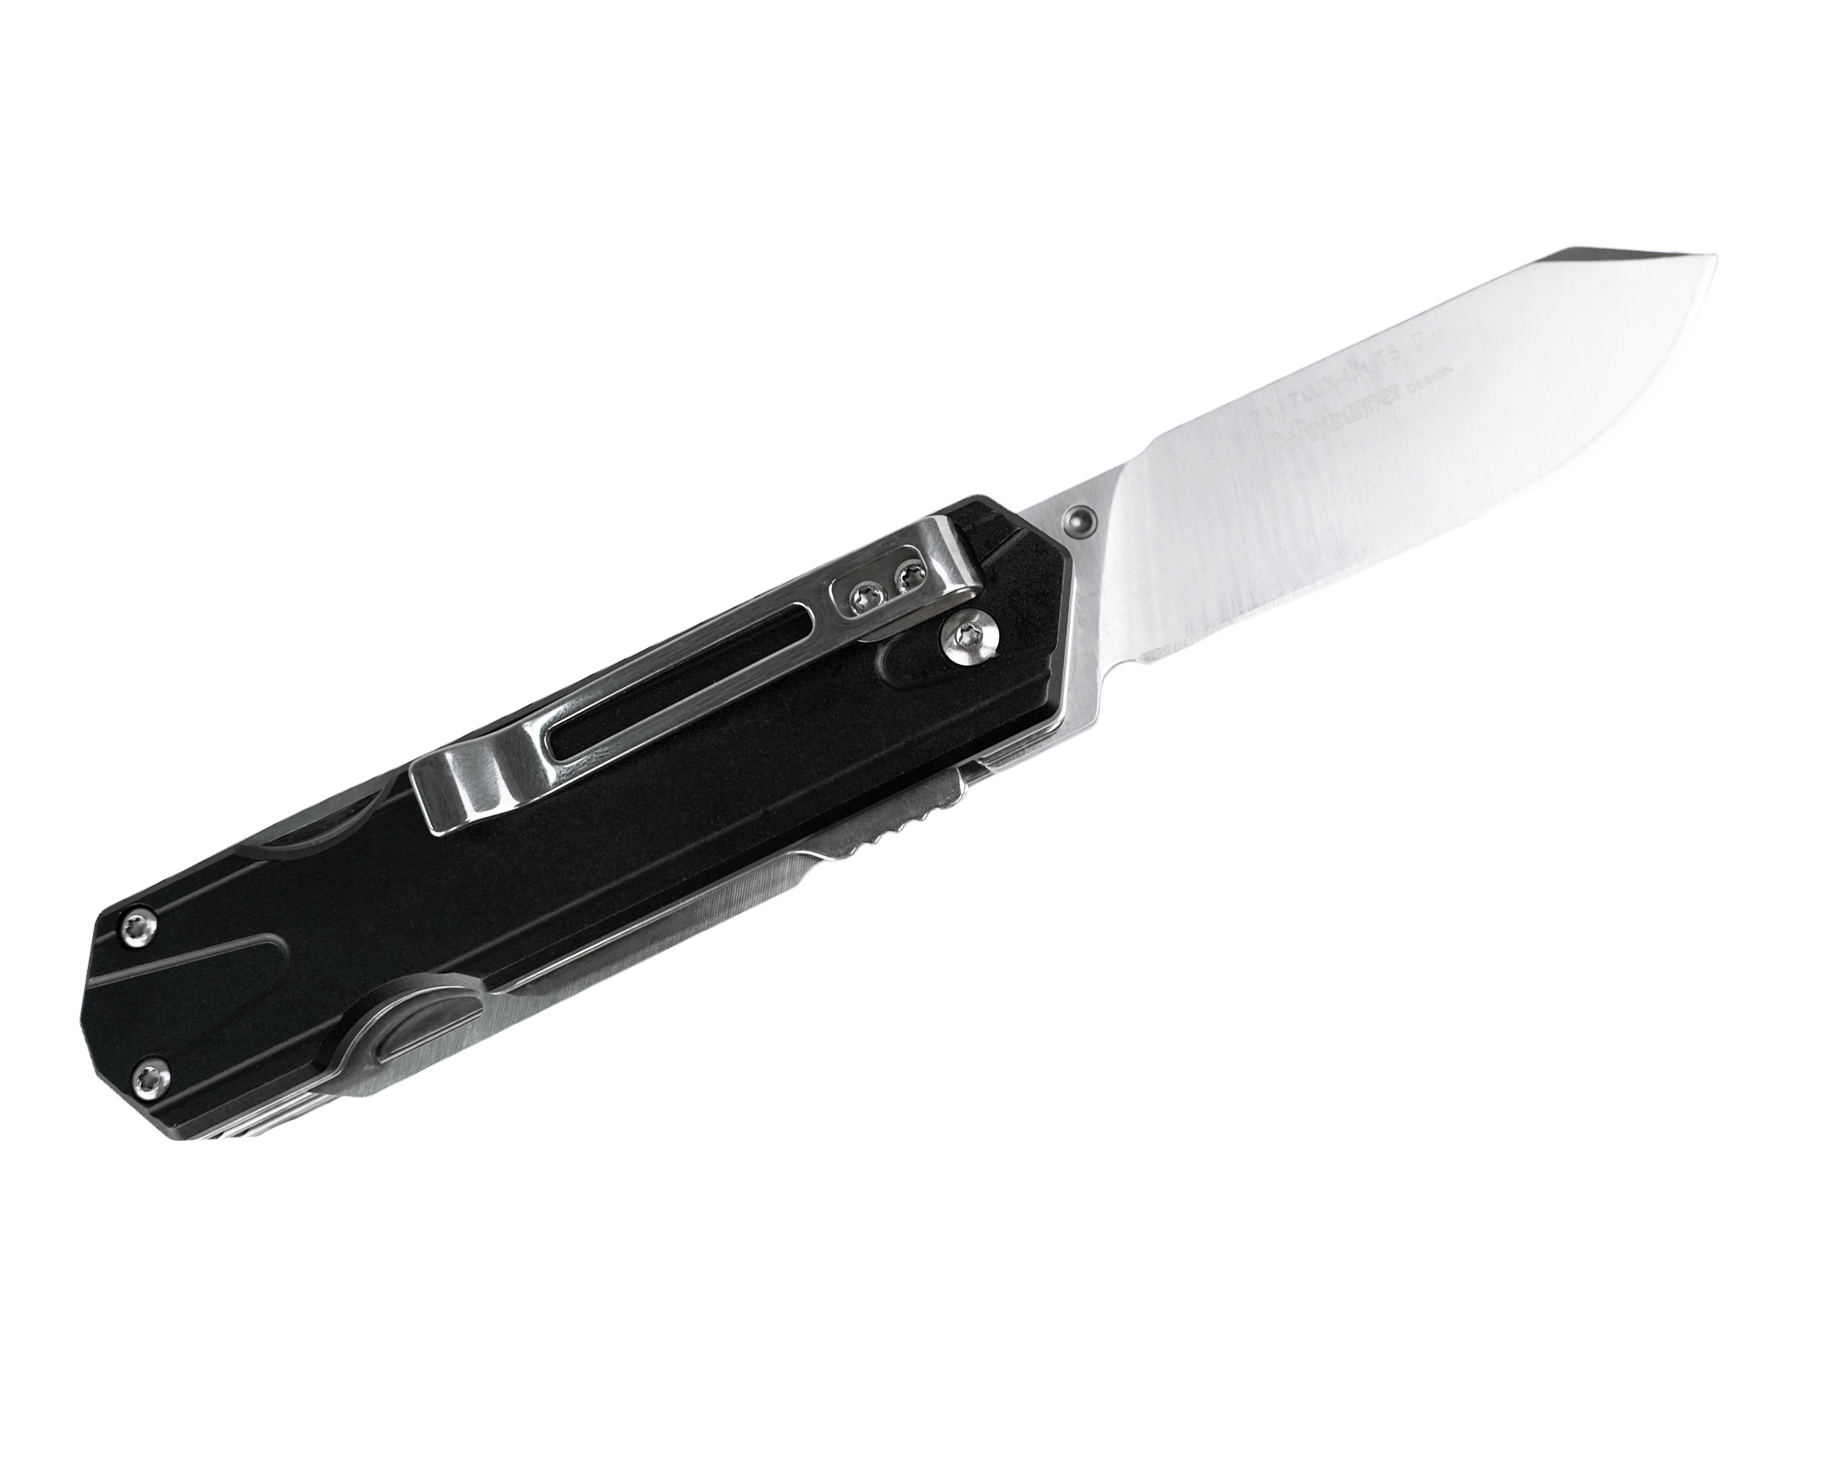 Нож Sanrenmu 7117LUX-LH-T5 складной сталь 12C27 рукоять Black Aluminum - фото 1